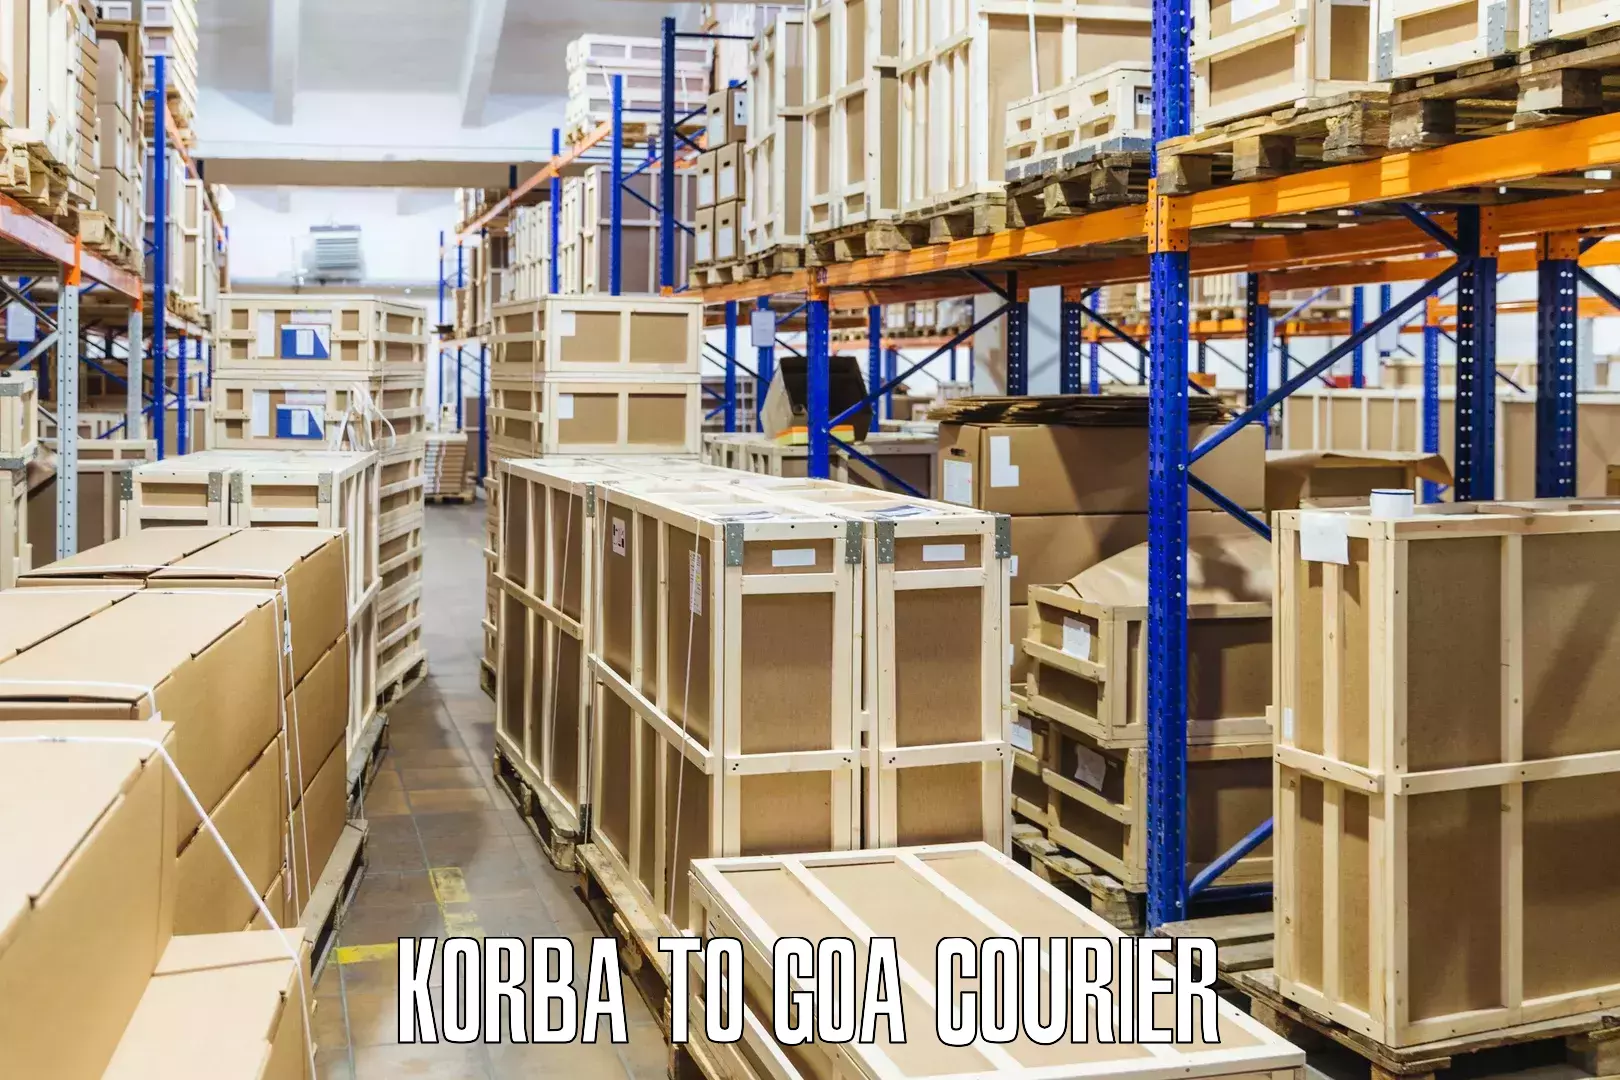 Multi-package shipping Korba to Canacona